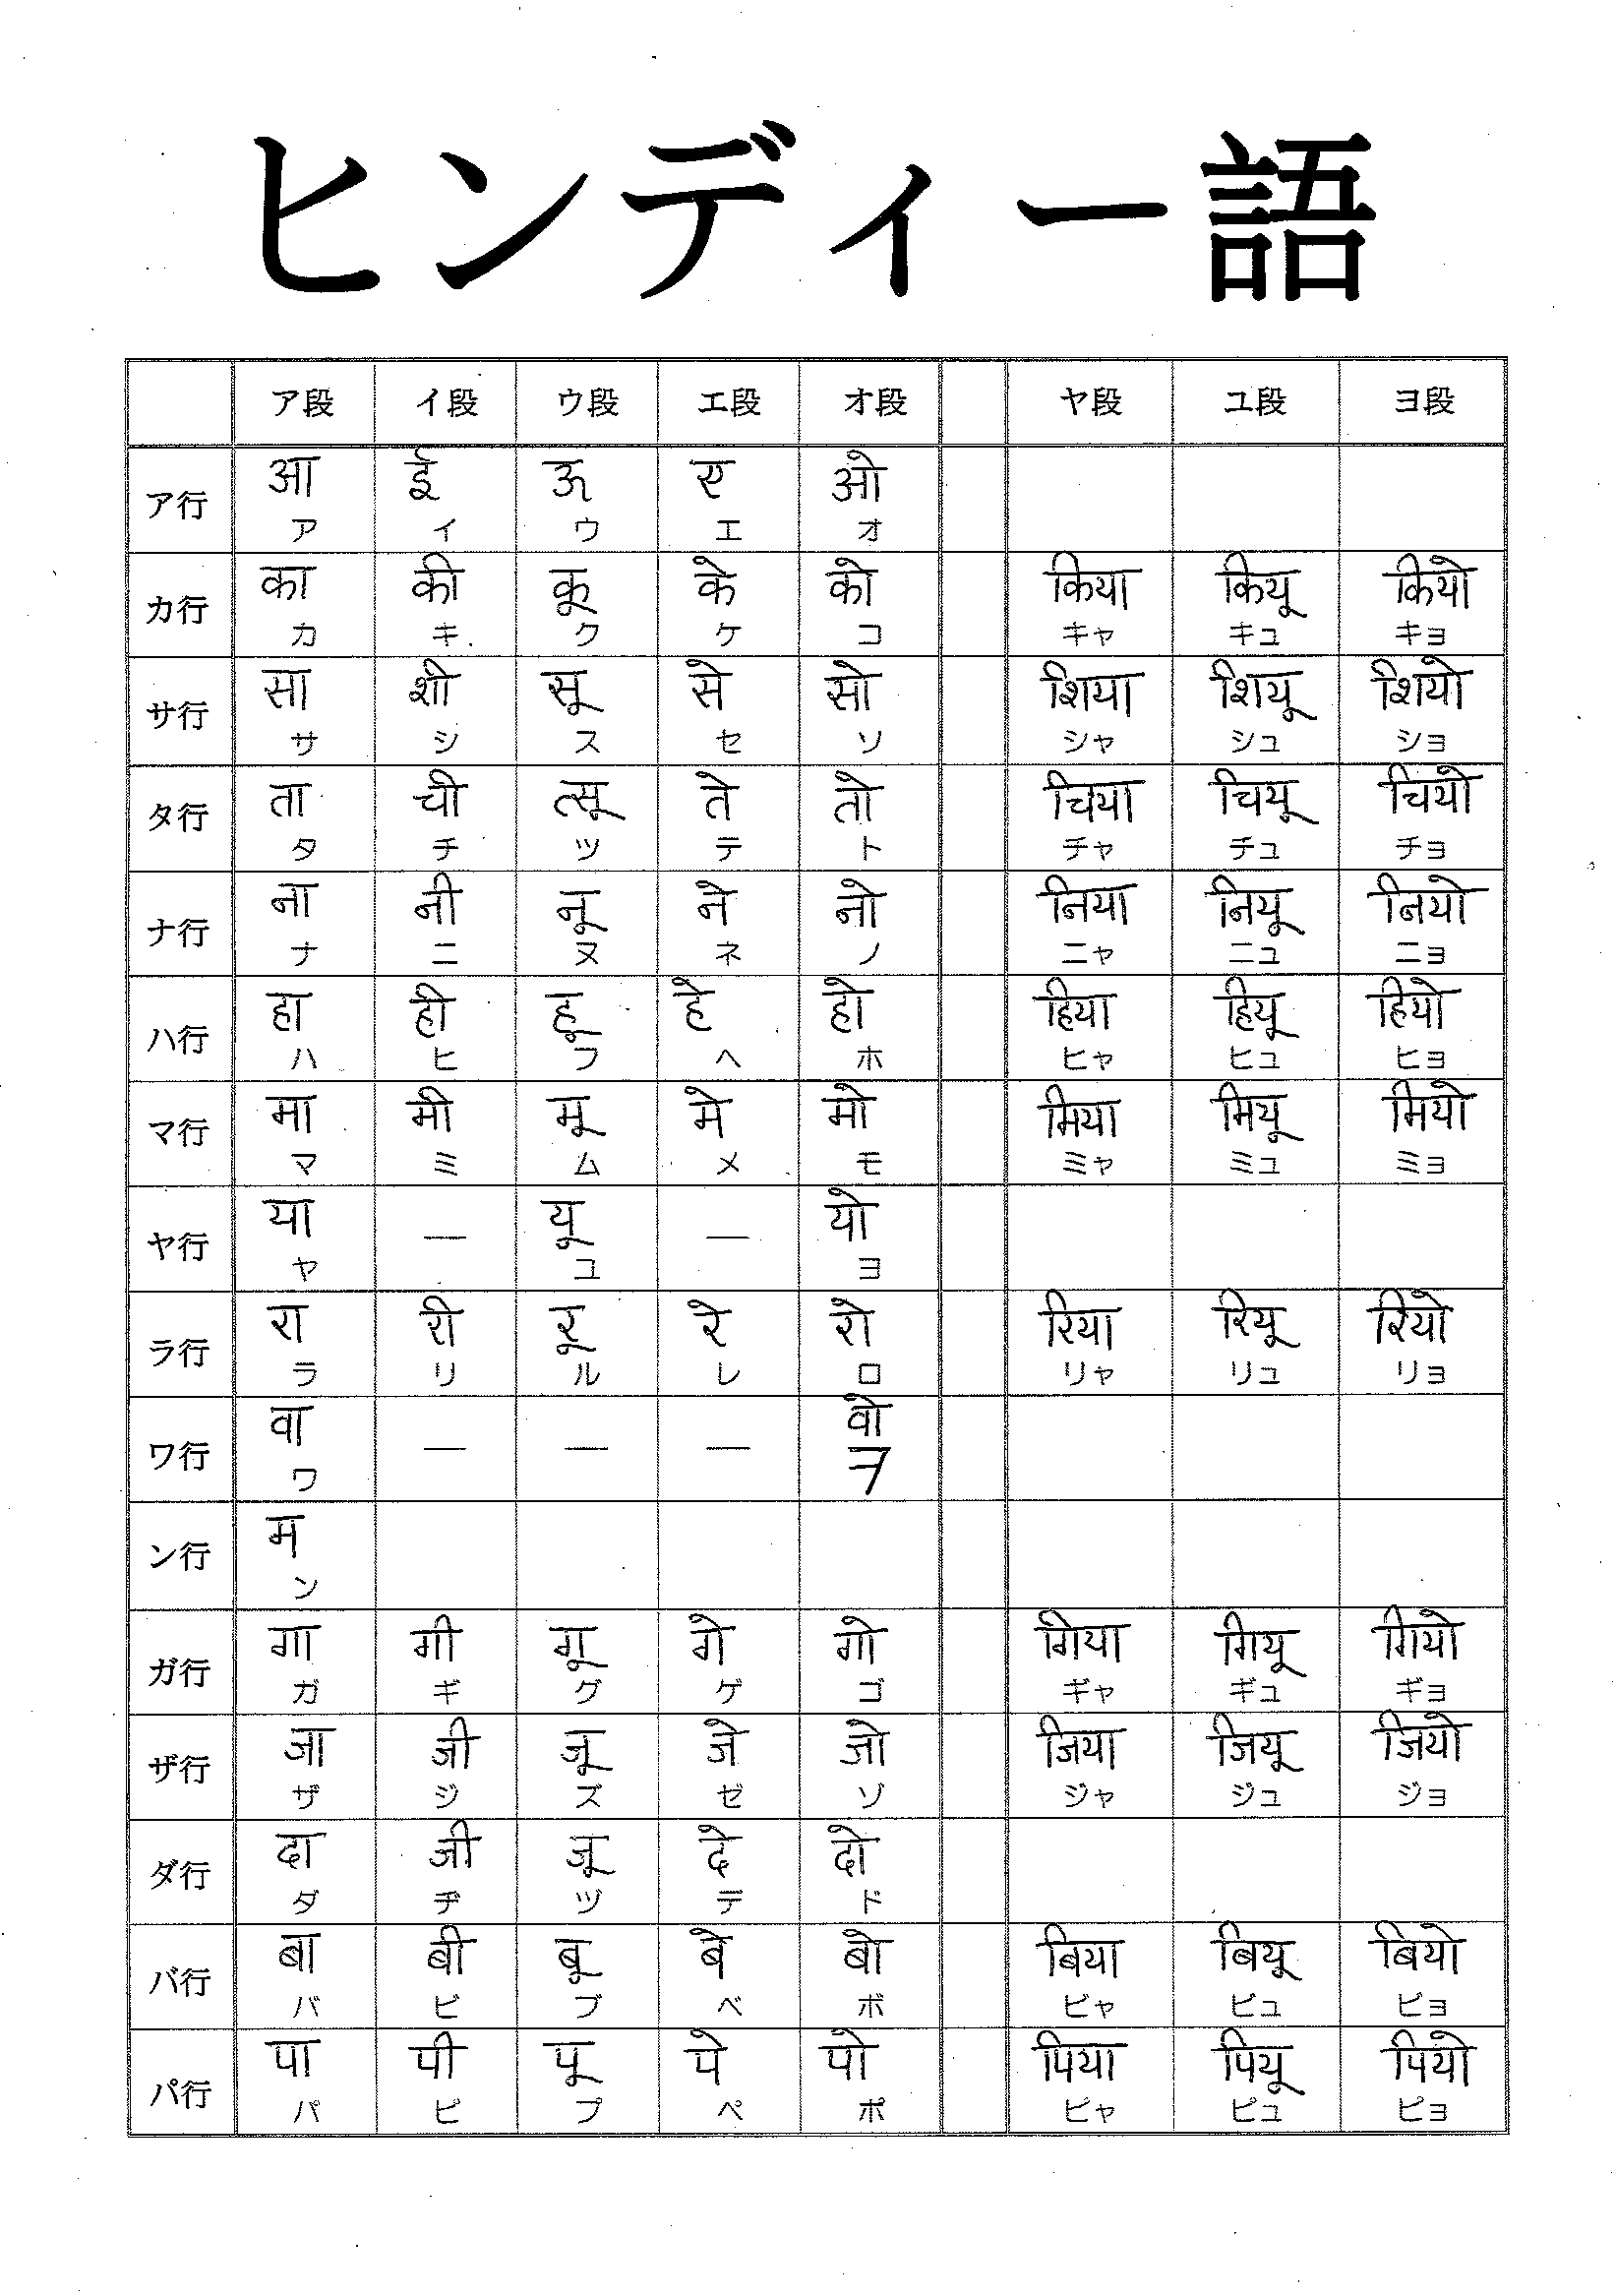 Bảng chữ cái tiếng Nhật Katakana